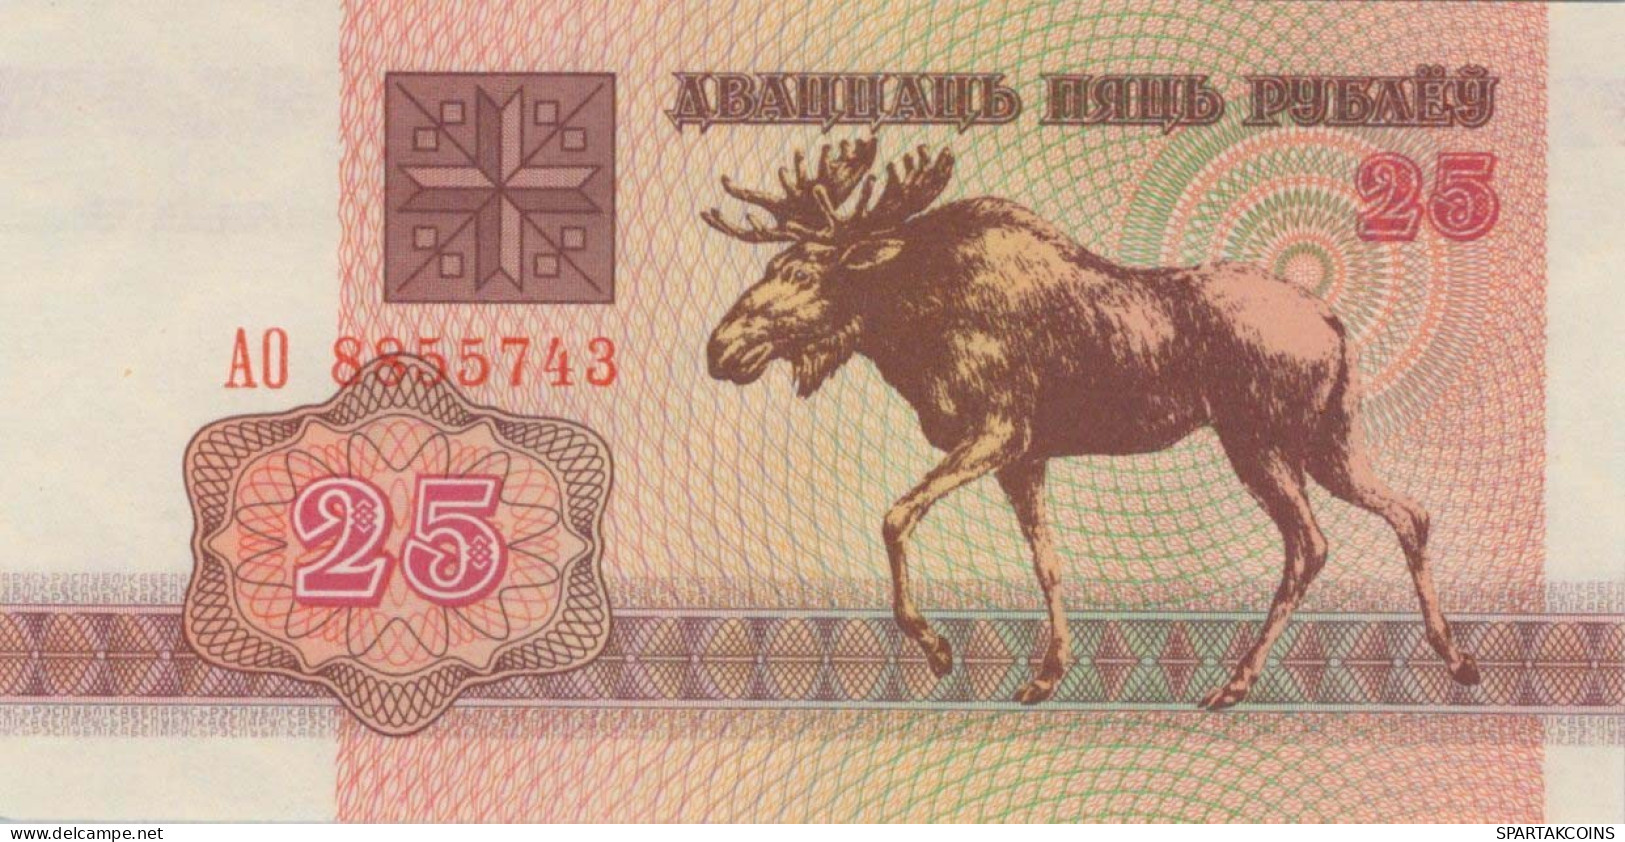 25 RUBLES 1992 BELARUS Papiergeld Banknote #PJ277 - Lokale Ausgaben